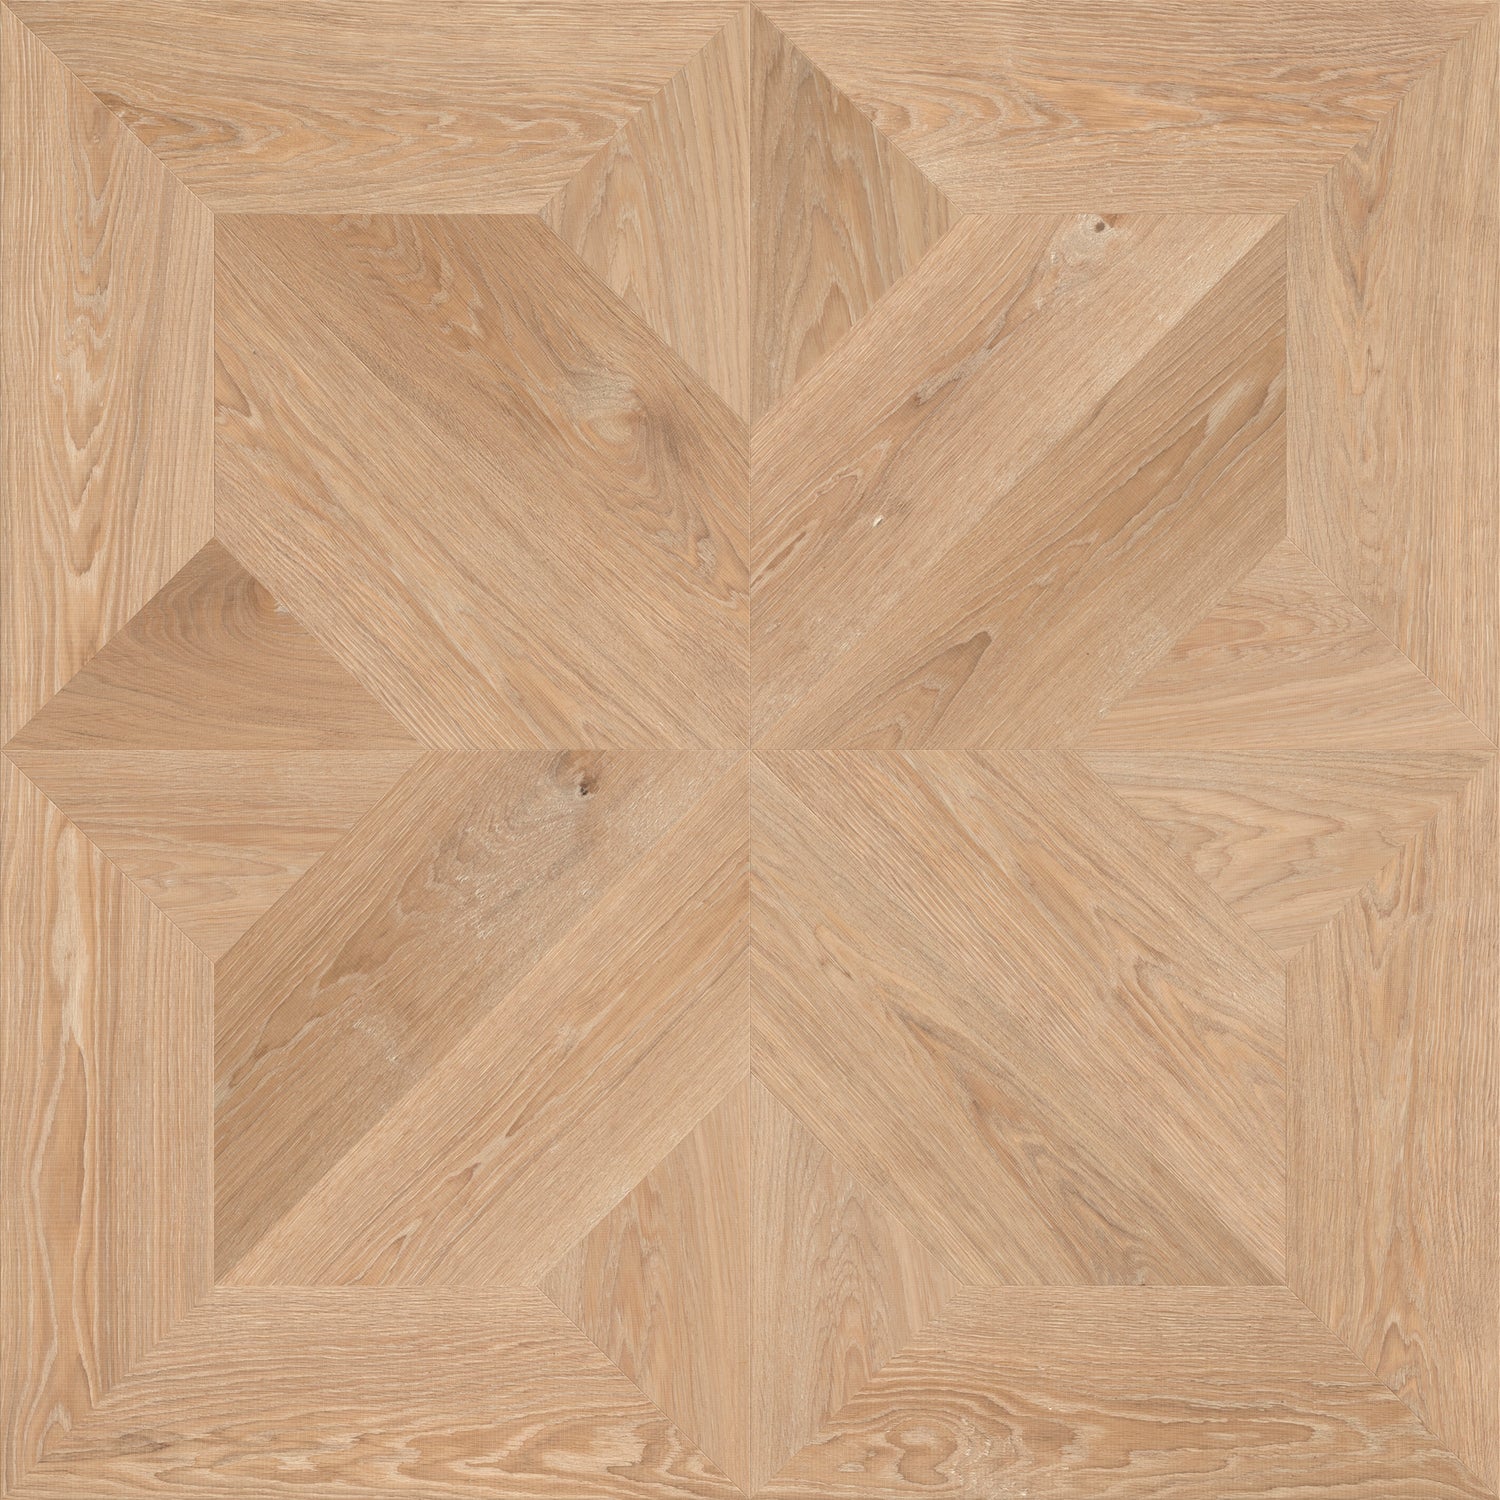 Century houten vloer patroon van duurzaam eikenhout